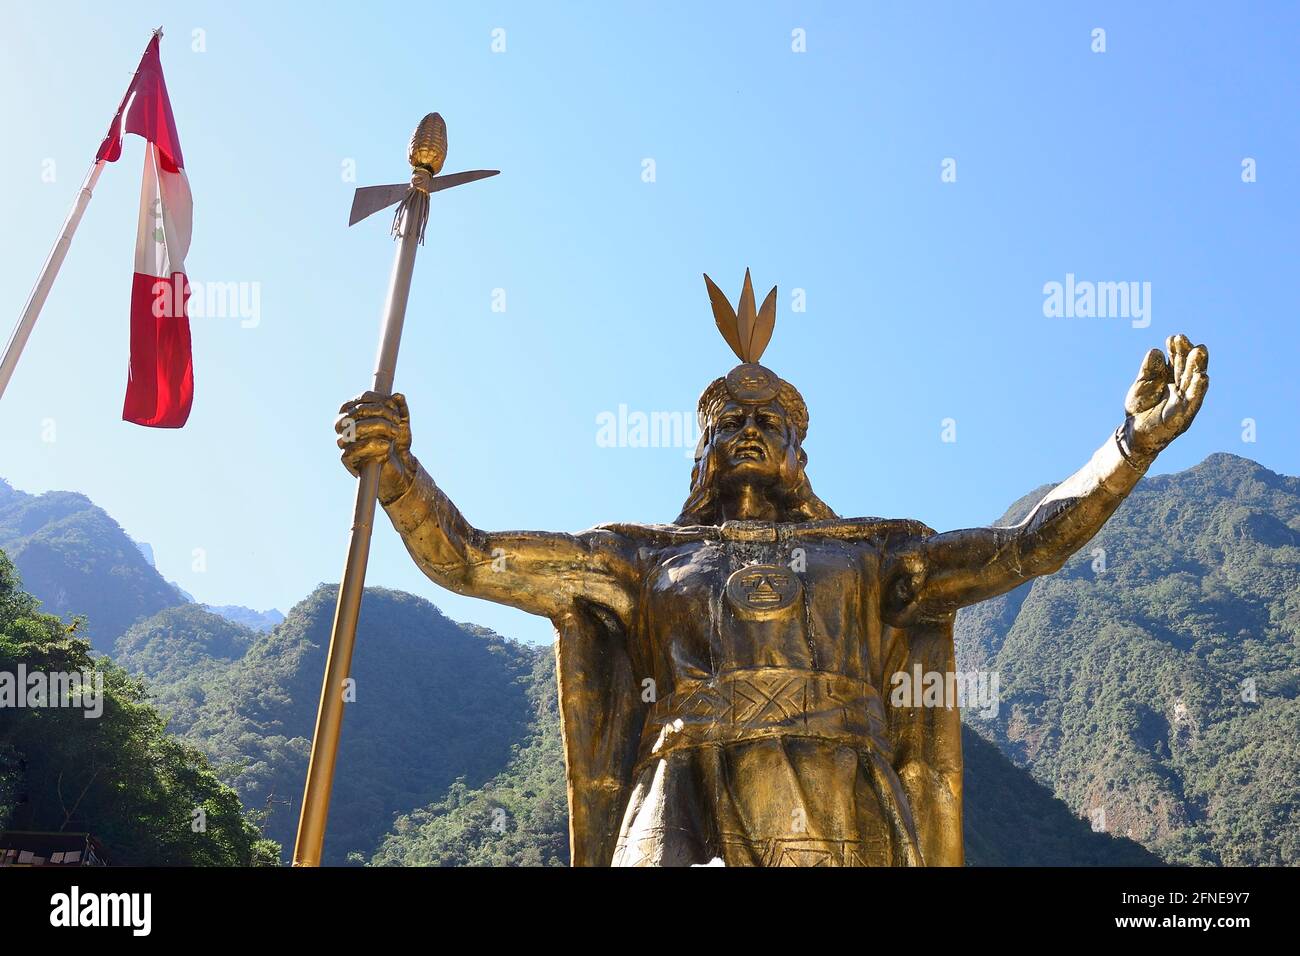 Statue de l'Inca Pachacutec sur la place principale, Aguas Calientes, Machu Picchu, province d'Urubamba, Pérou Banque D'Images